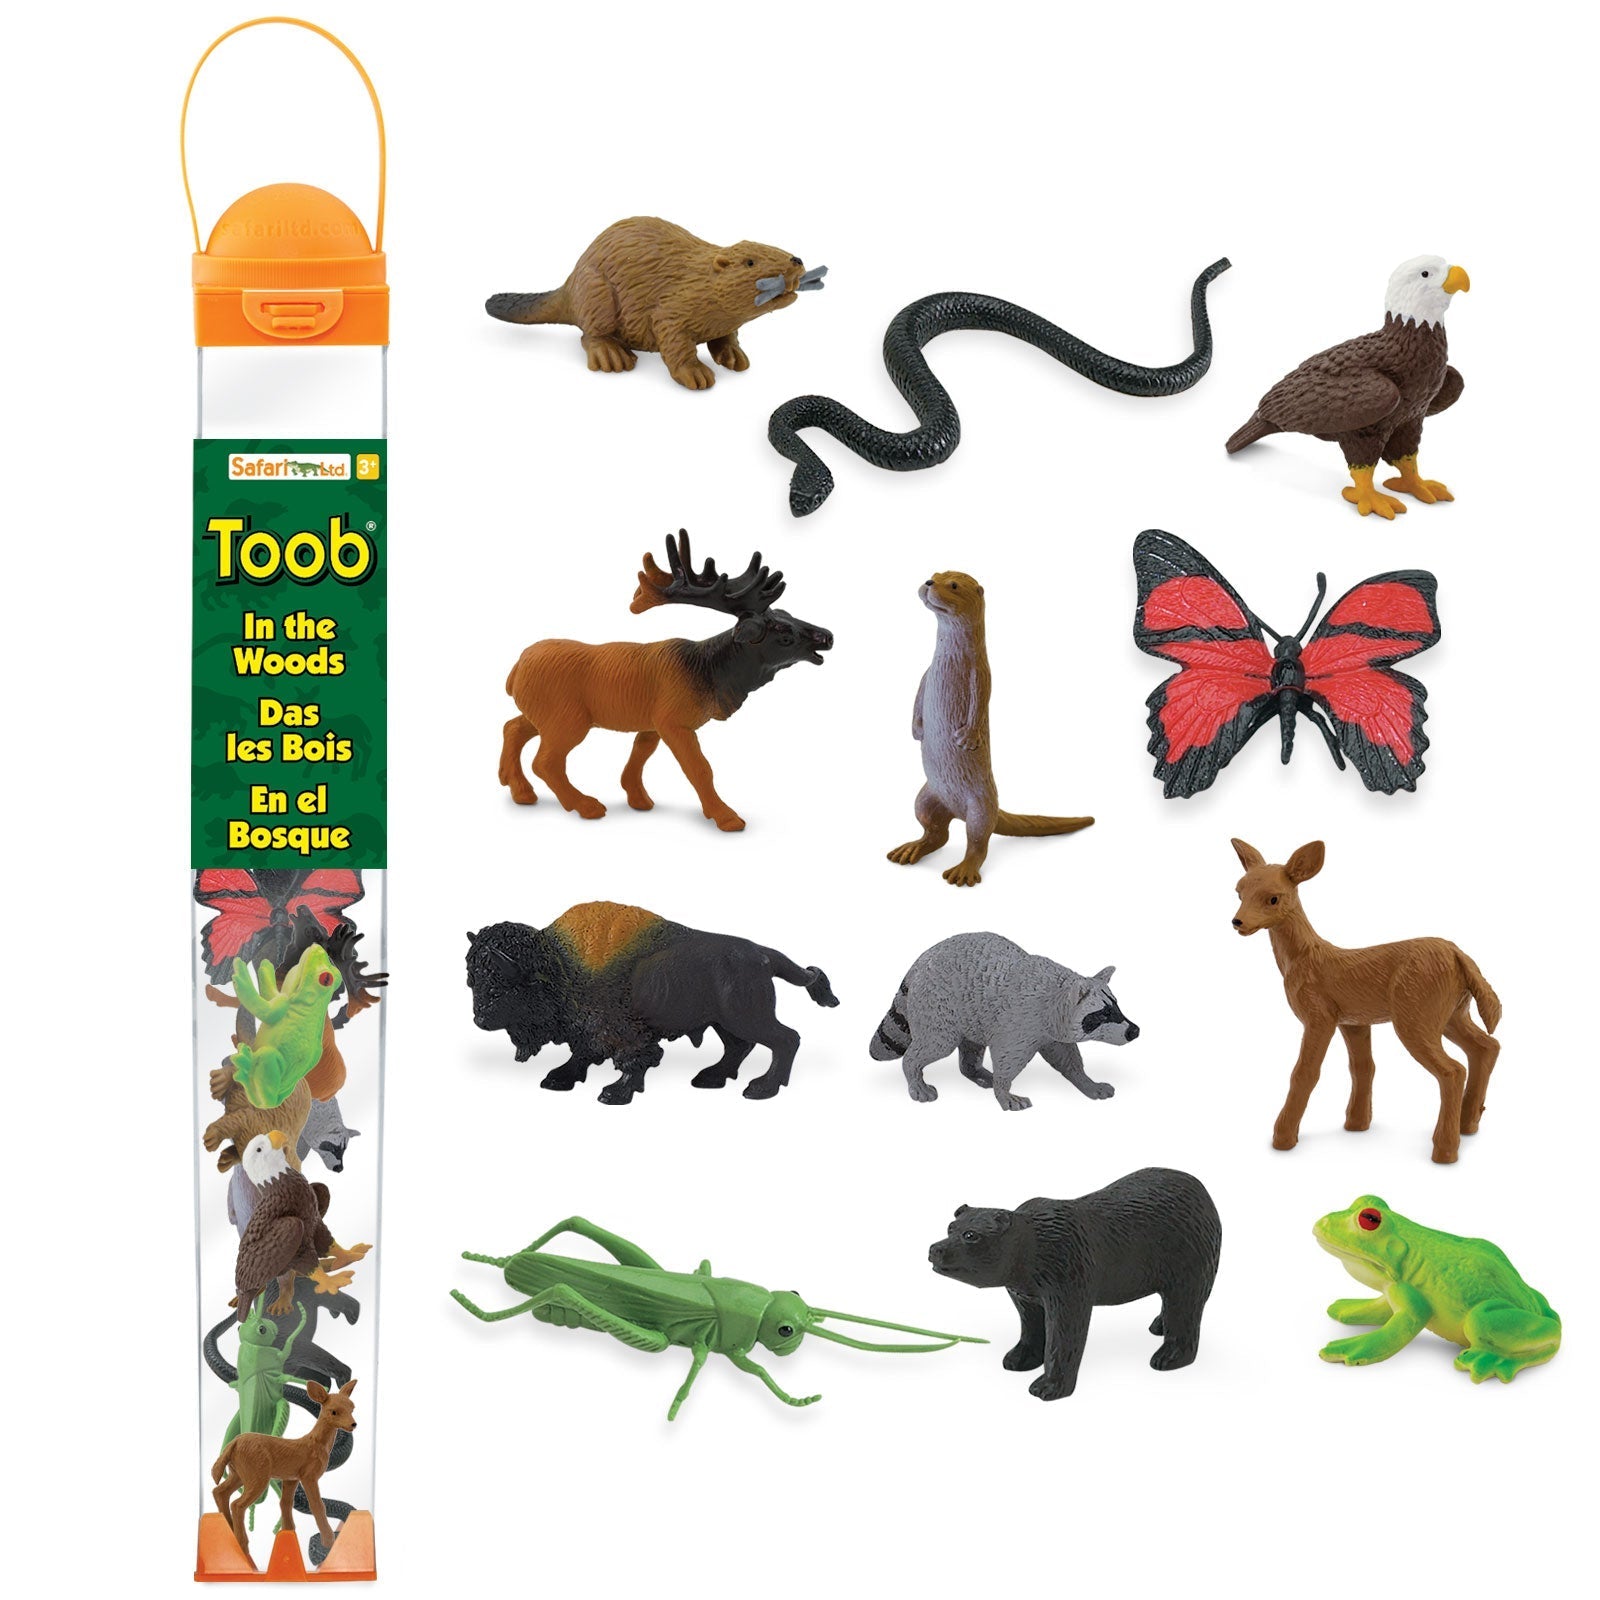 Safari Ltd: Figuras en animales de bosque de tuba en el bosque Toob 12 PC.